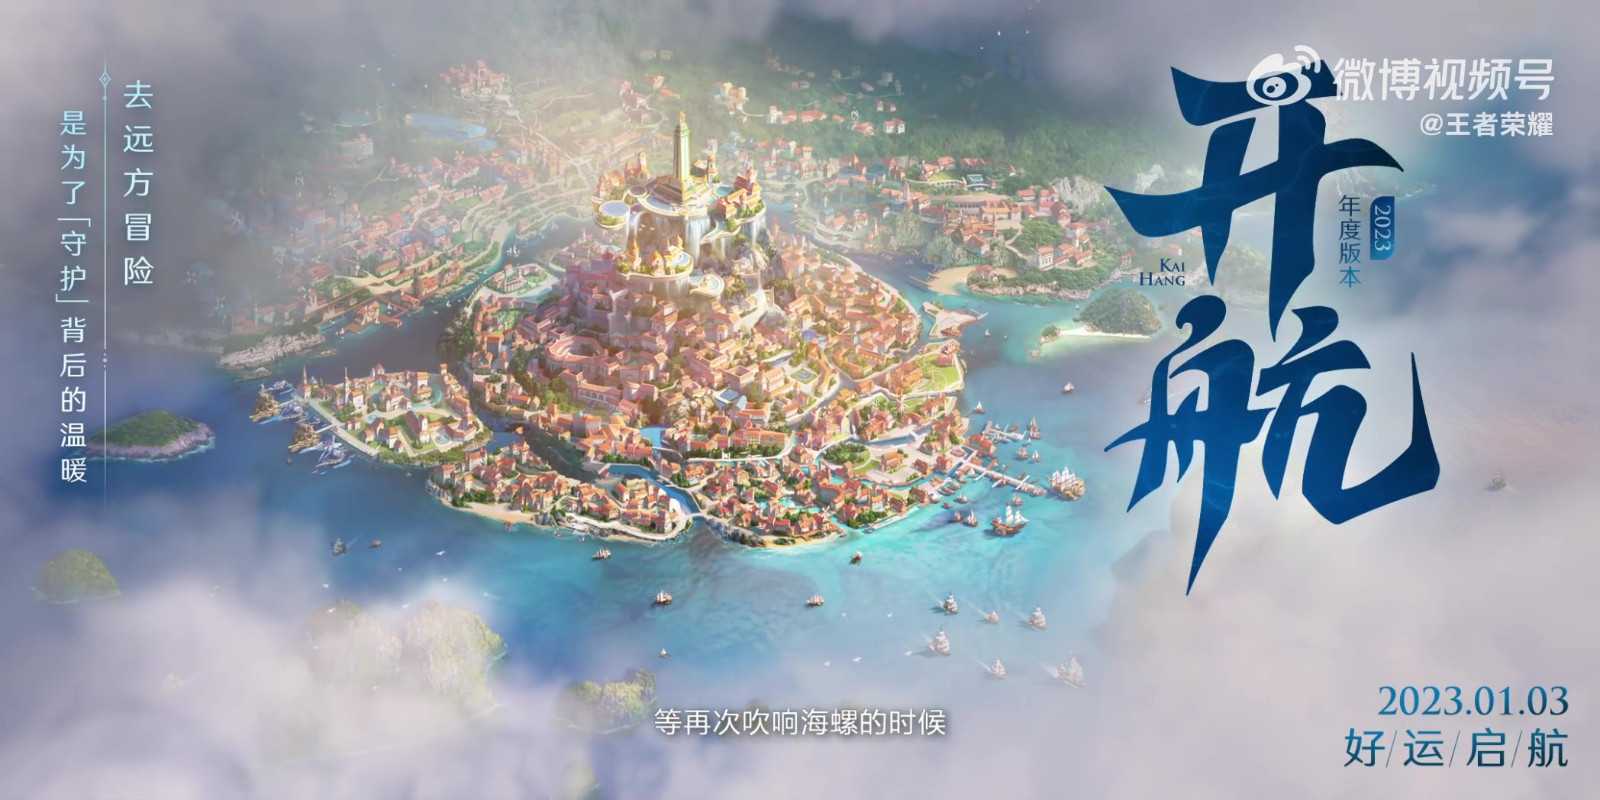 《王者荣耀》新版本动画“开航”发布 1月3日上线